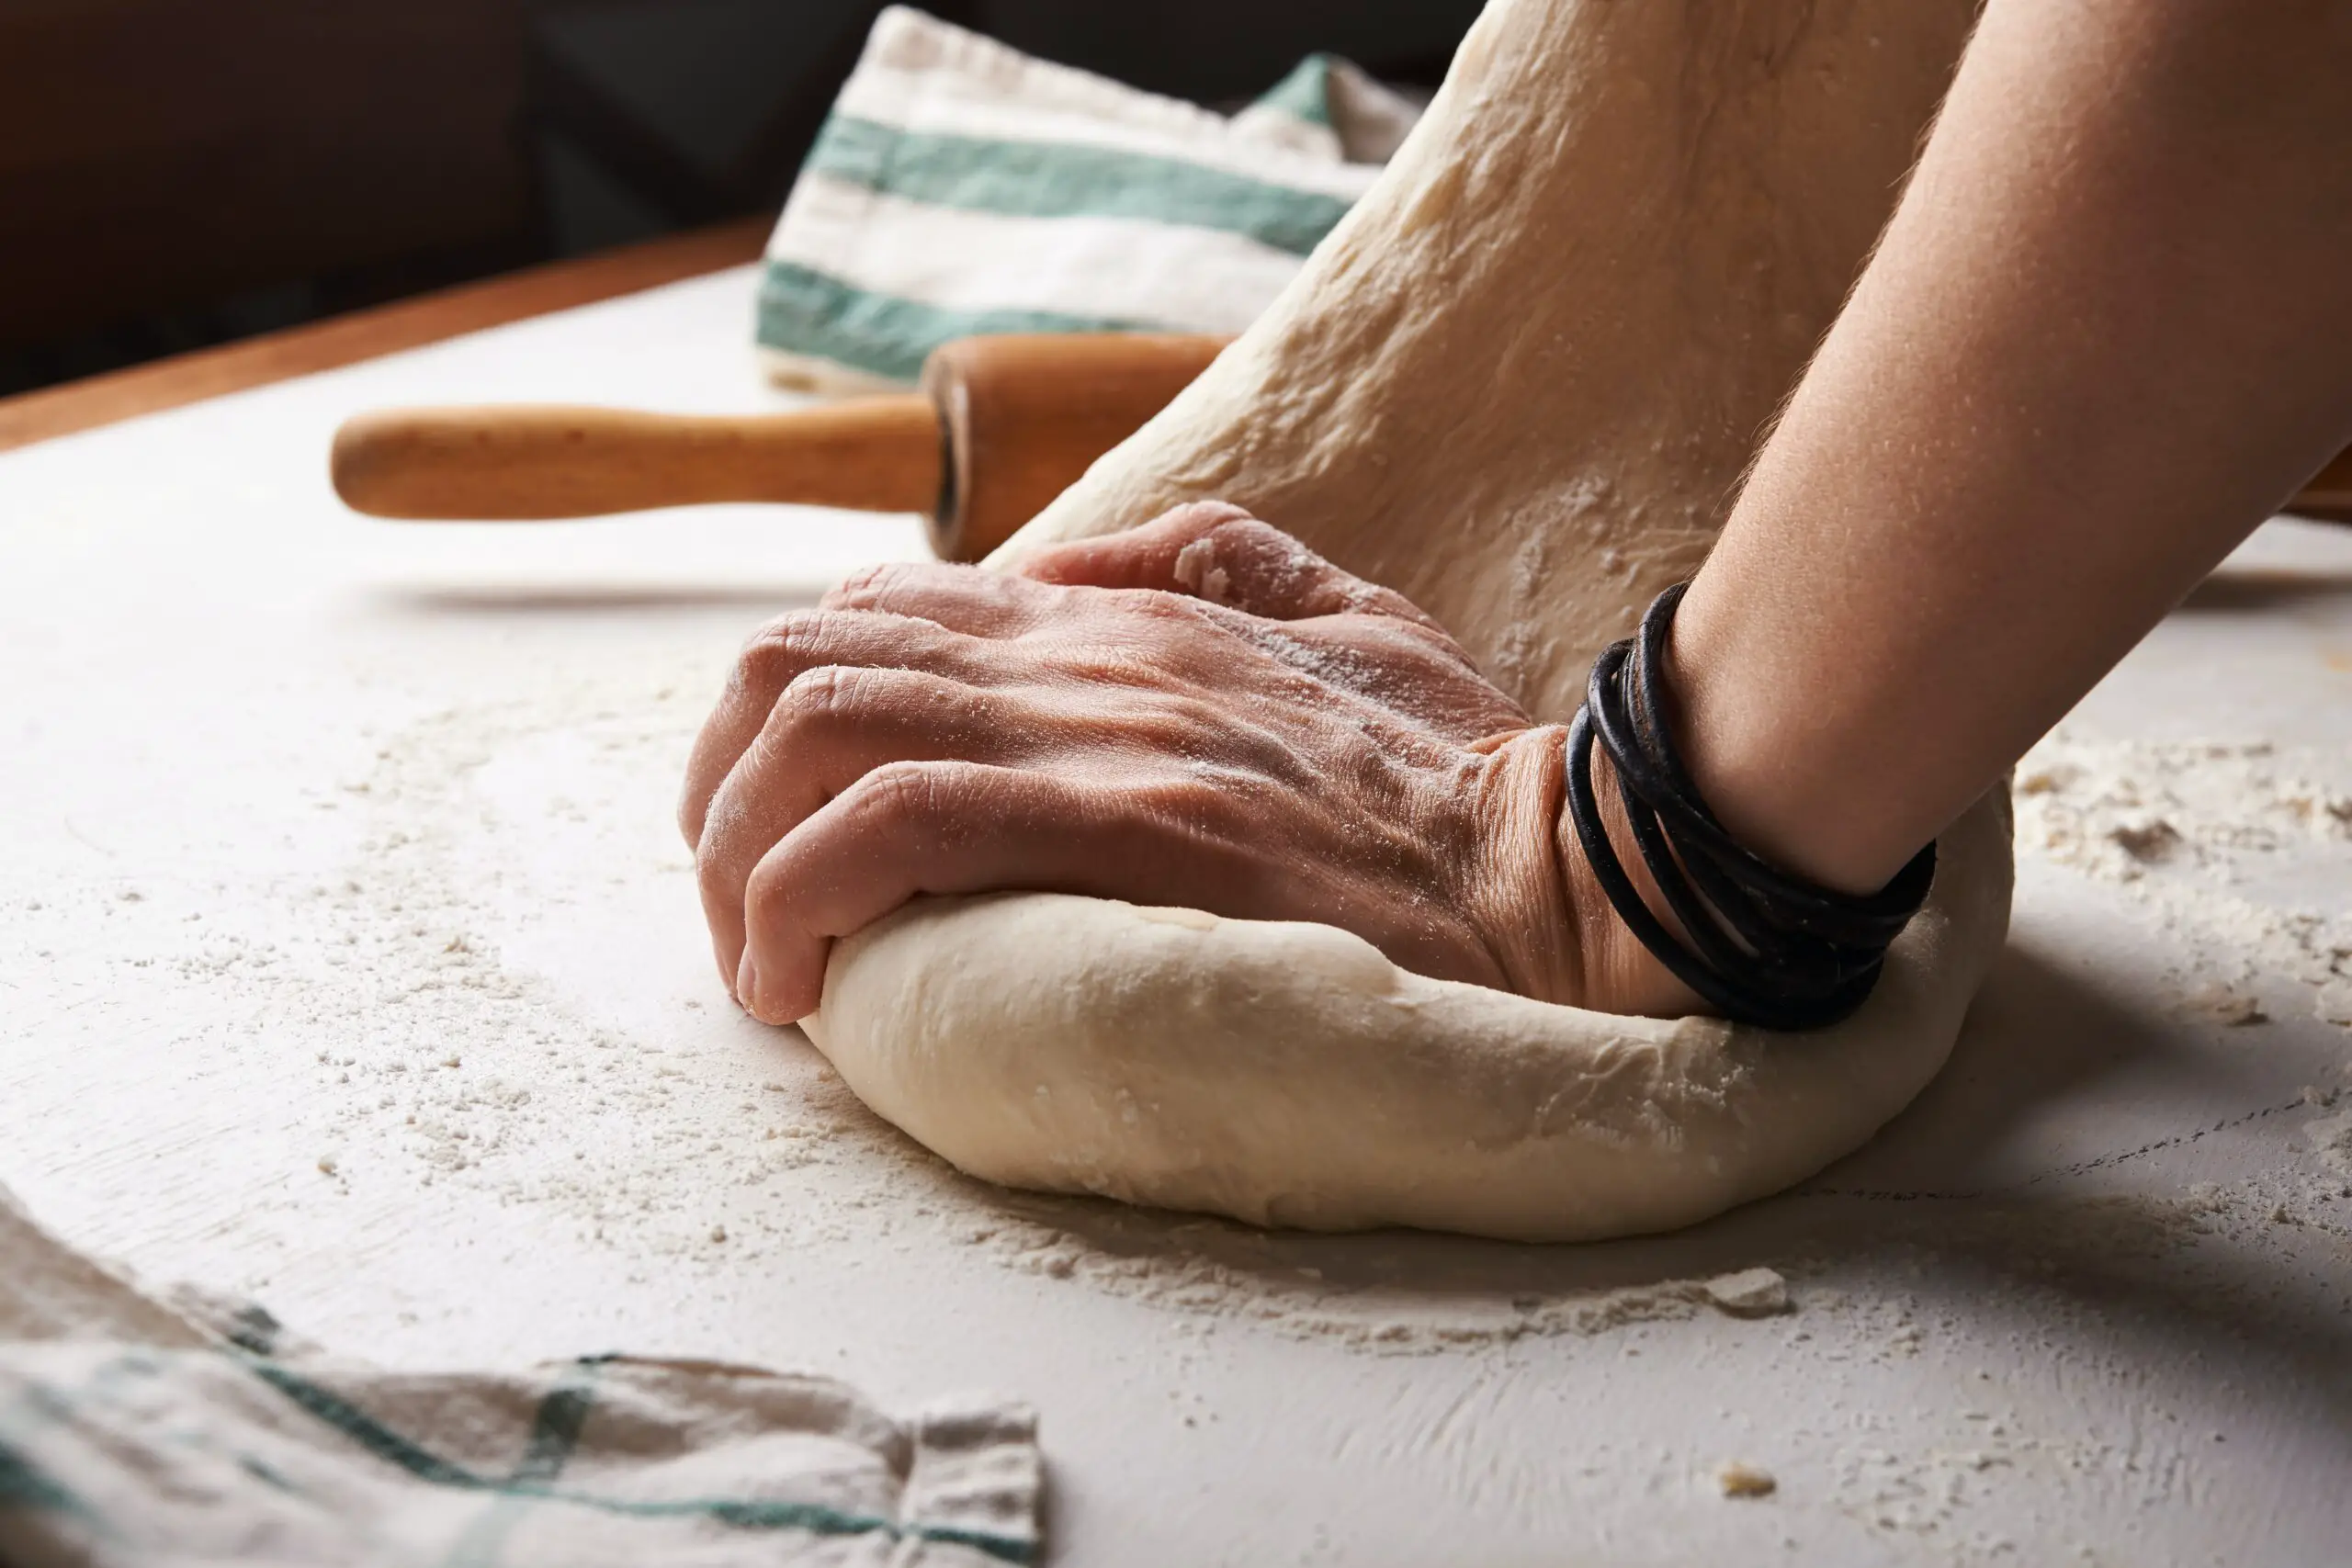 Historia del pan: un alimento sencillo y antiguo, consumido en todo el mundo.